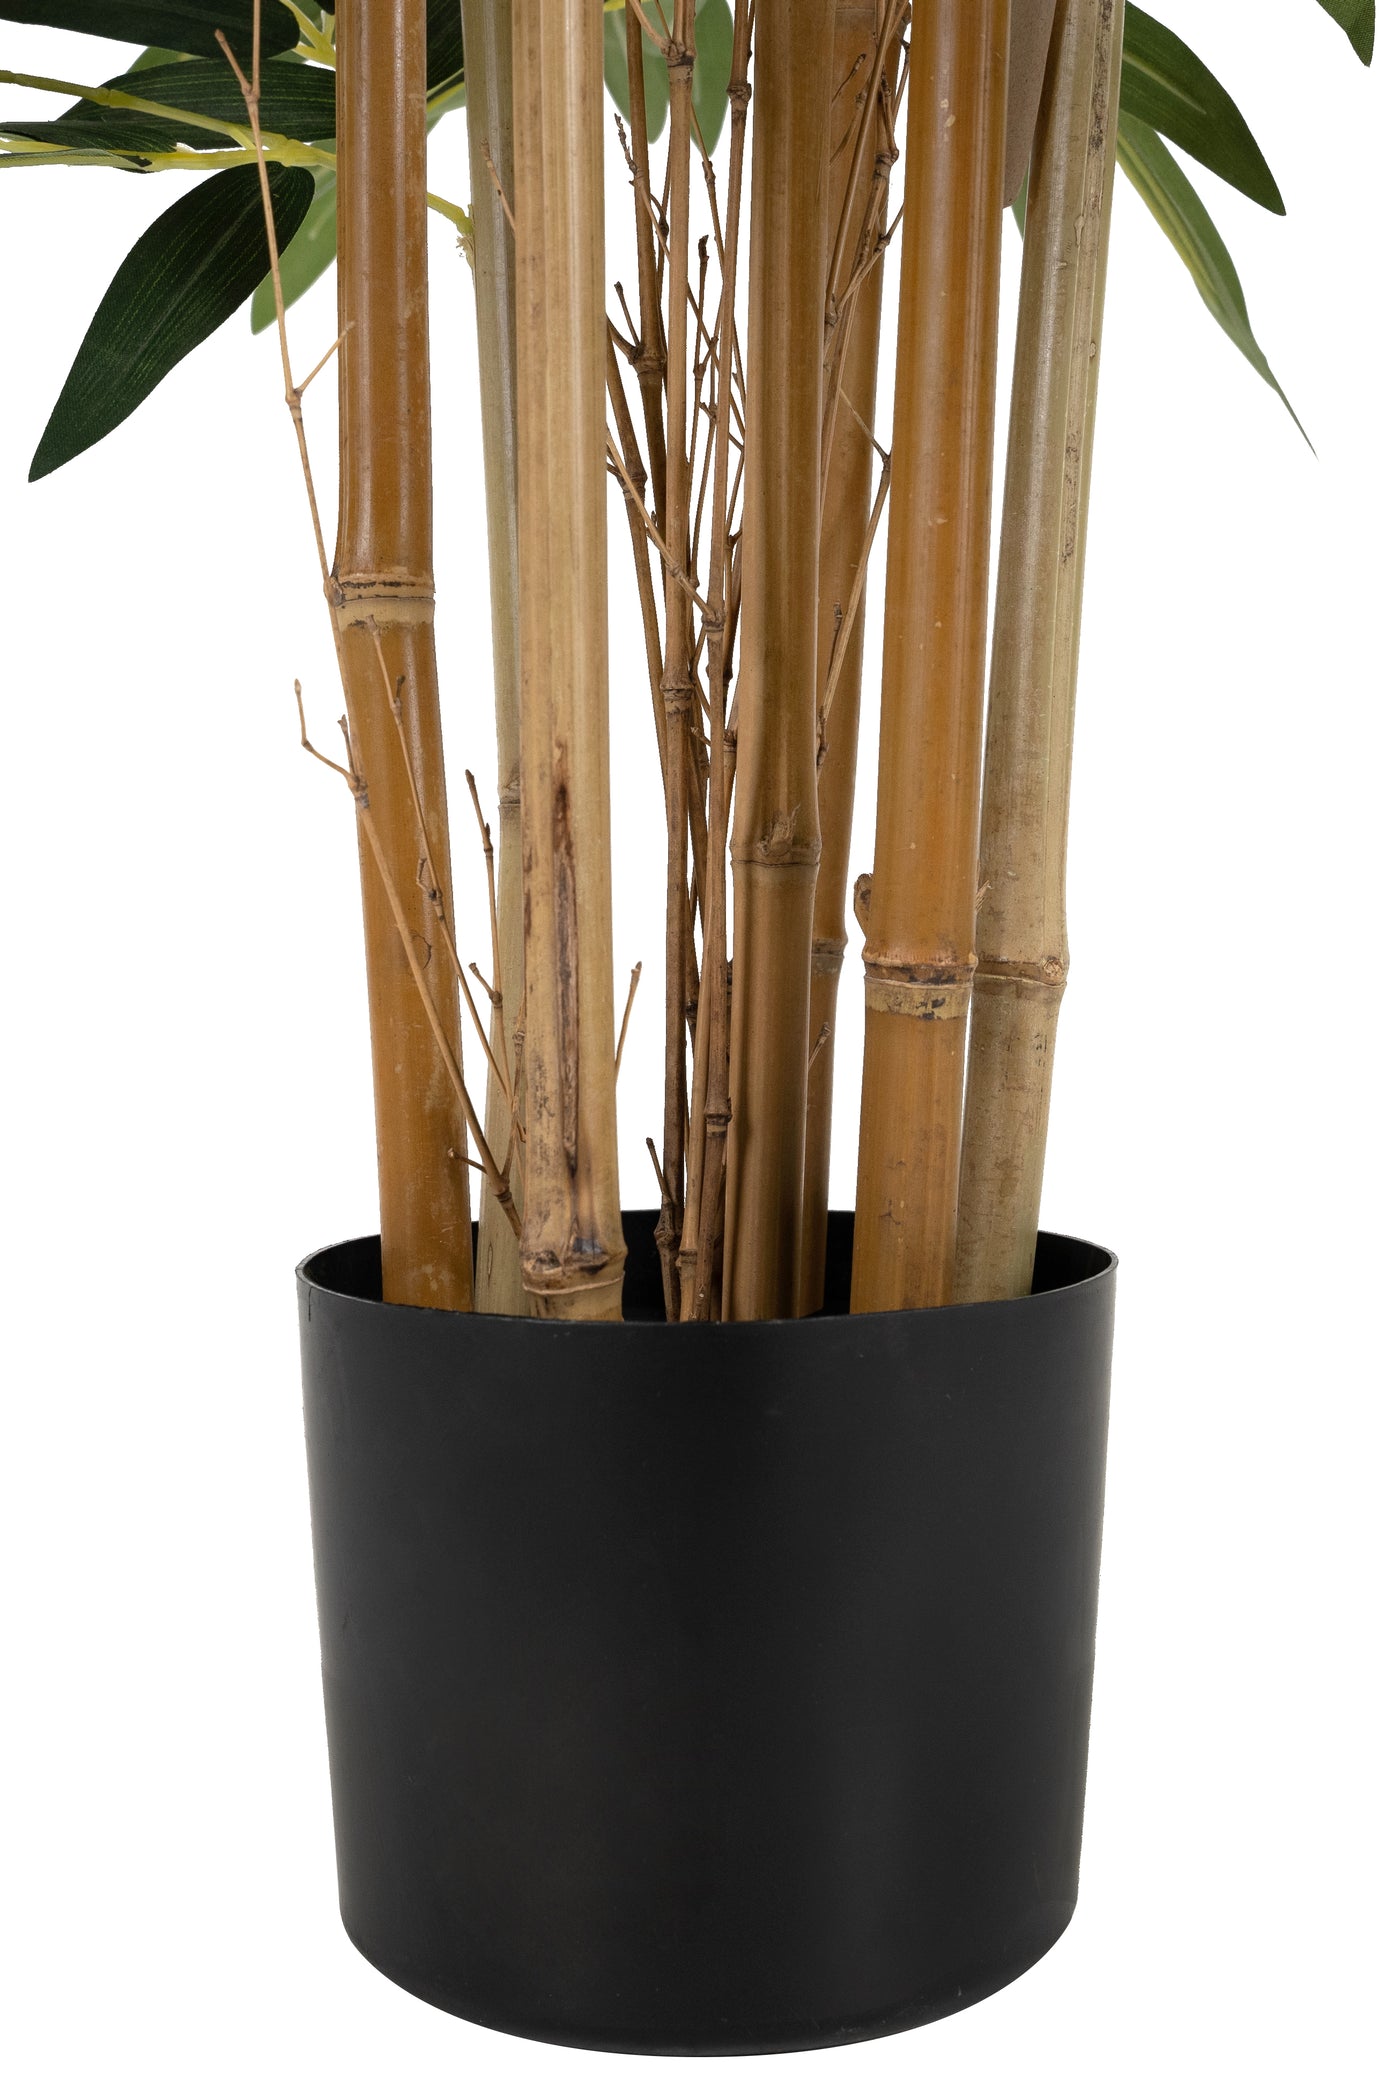 Bambus natural H150 cm cu 960 frunze